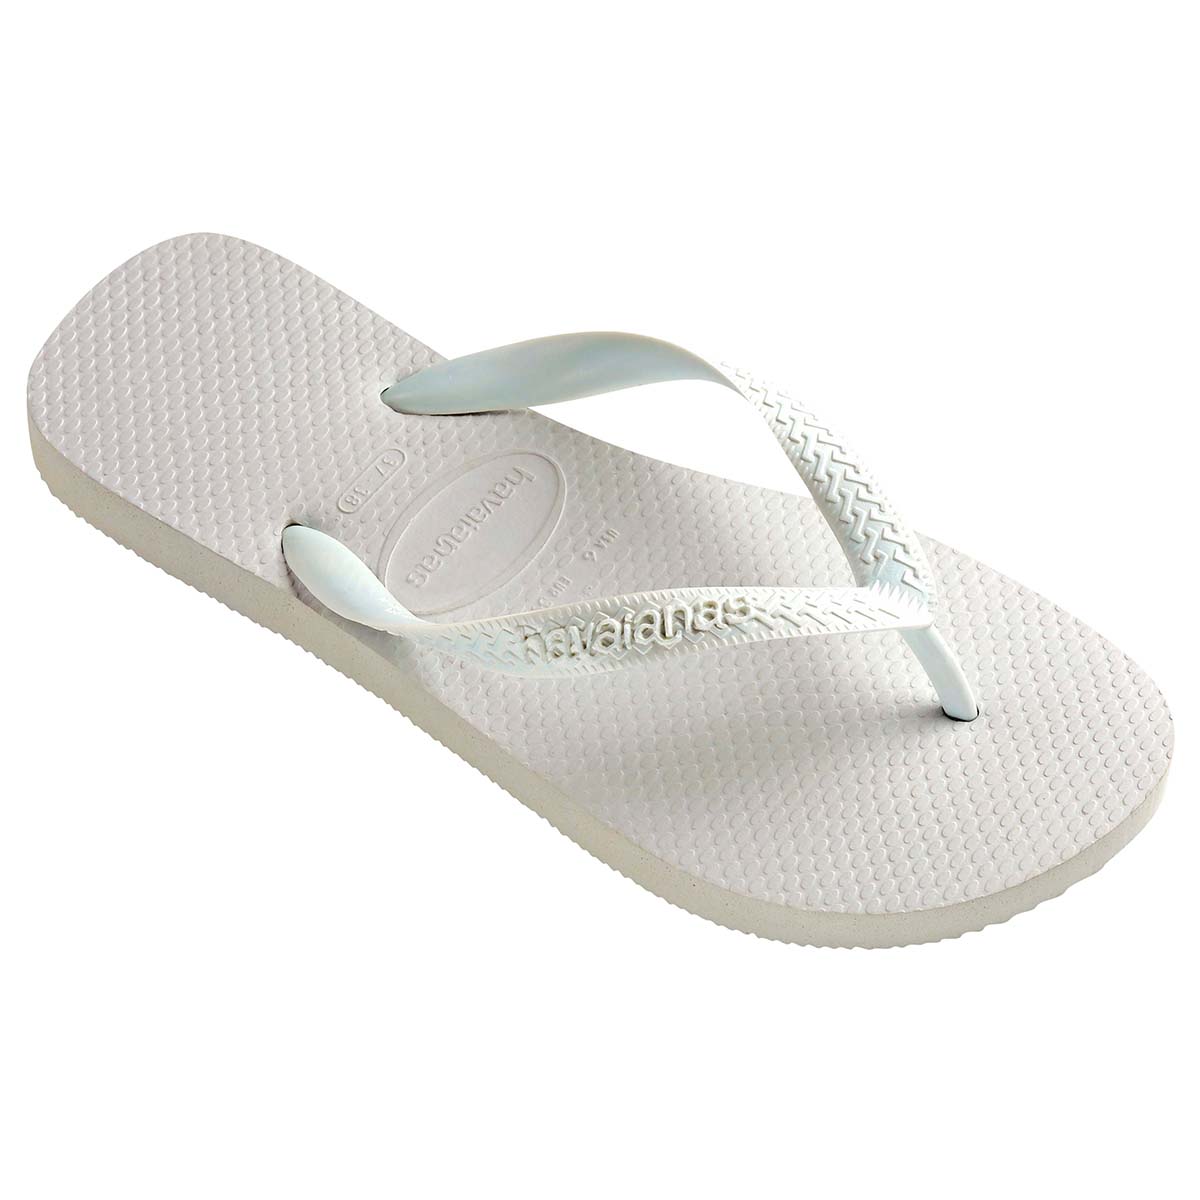 Havaianas Top Unisex Erwachsene Sandalen Zehentrenner Badelatschen 4000029 Weiß